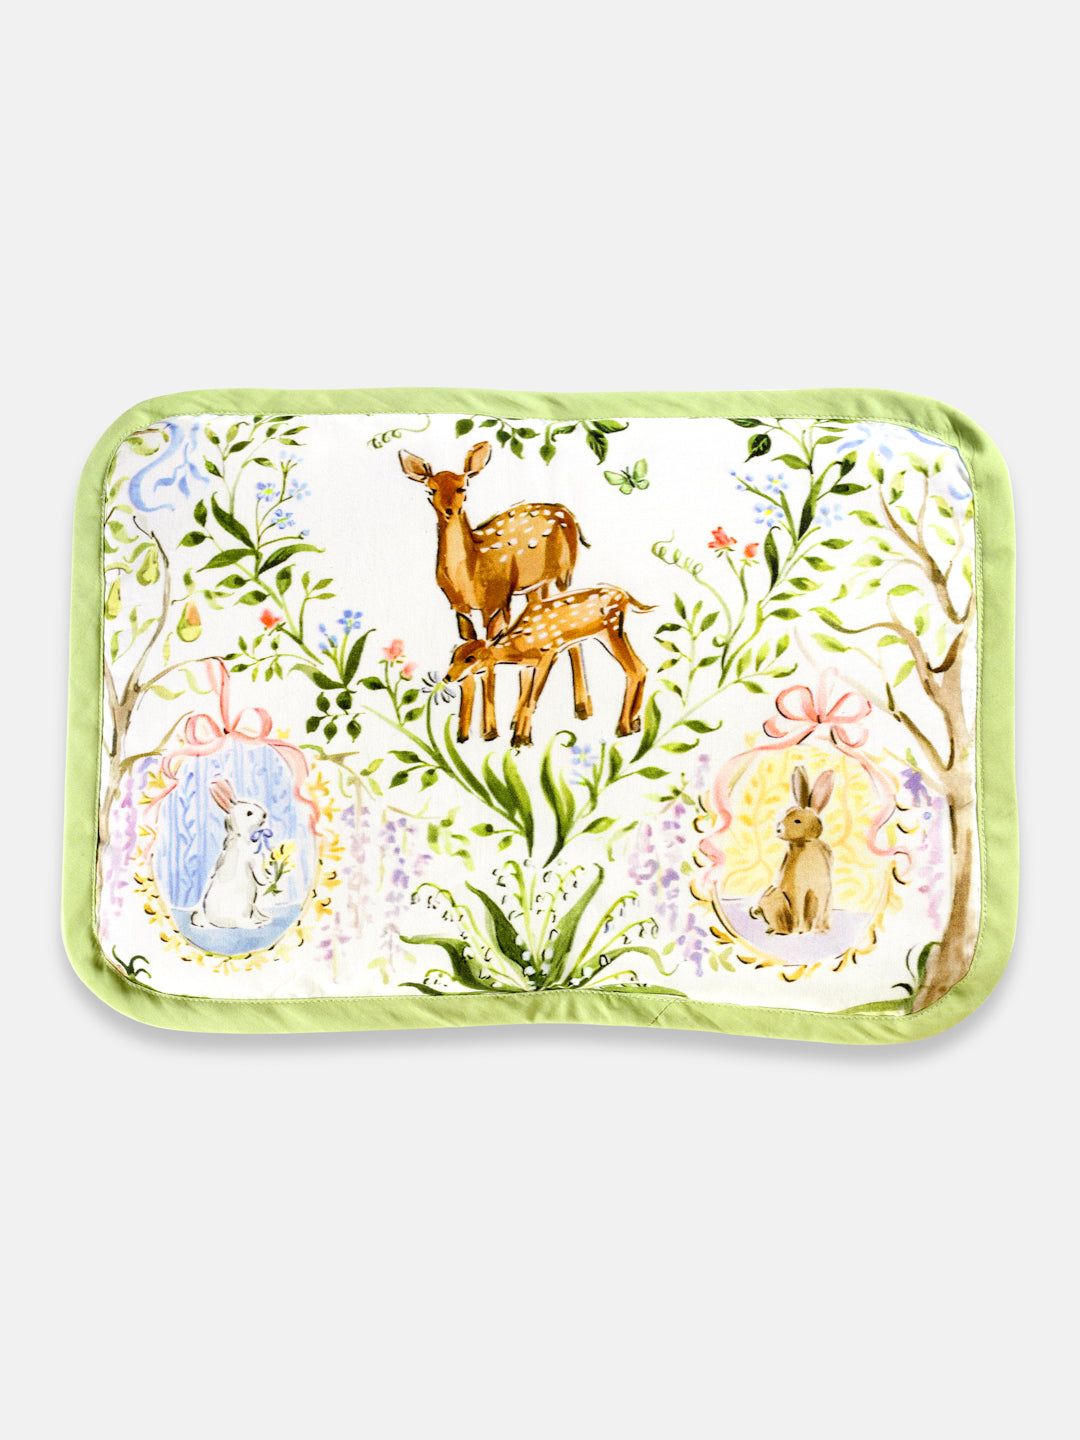 quilt & Bedding Set - Pack of 5 (Enchanted Deer)